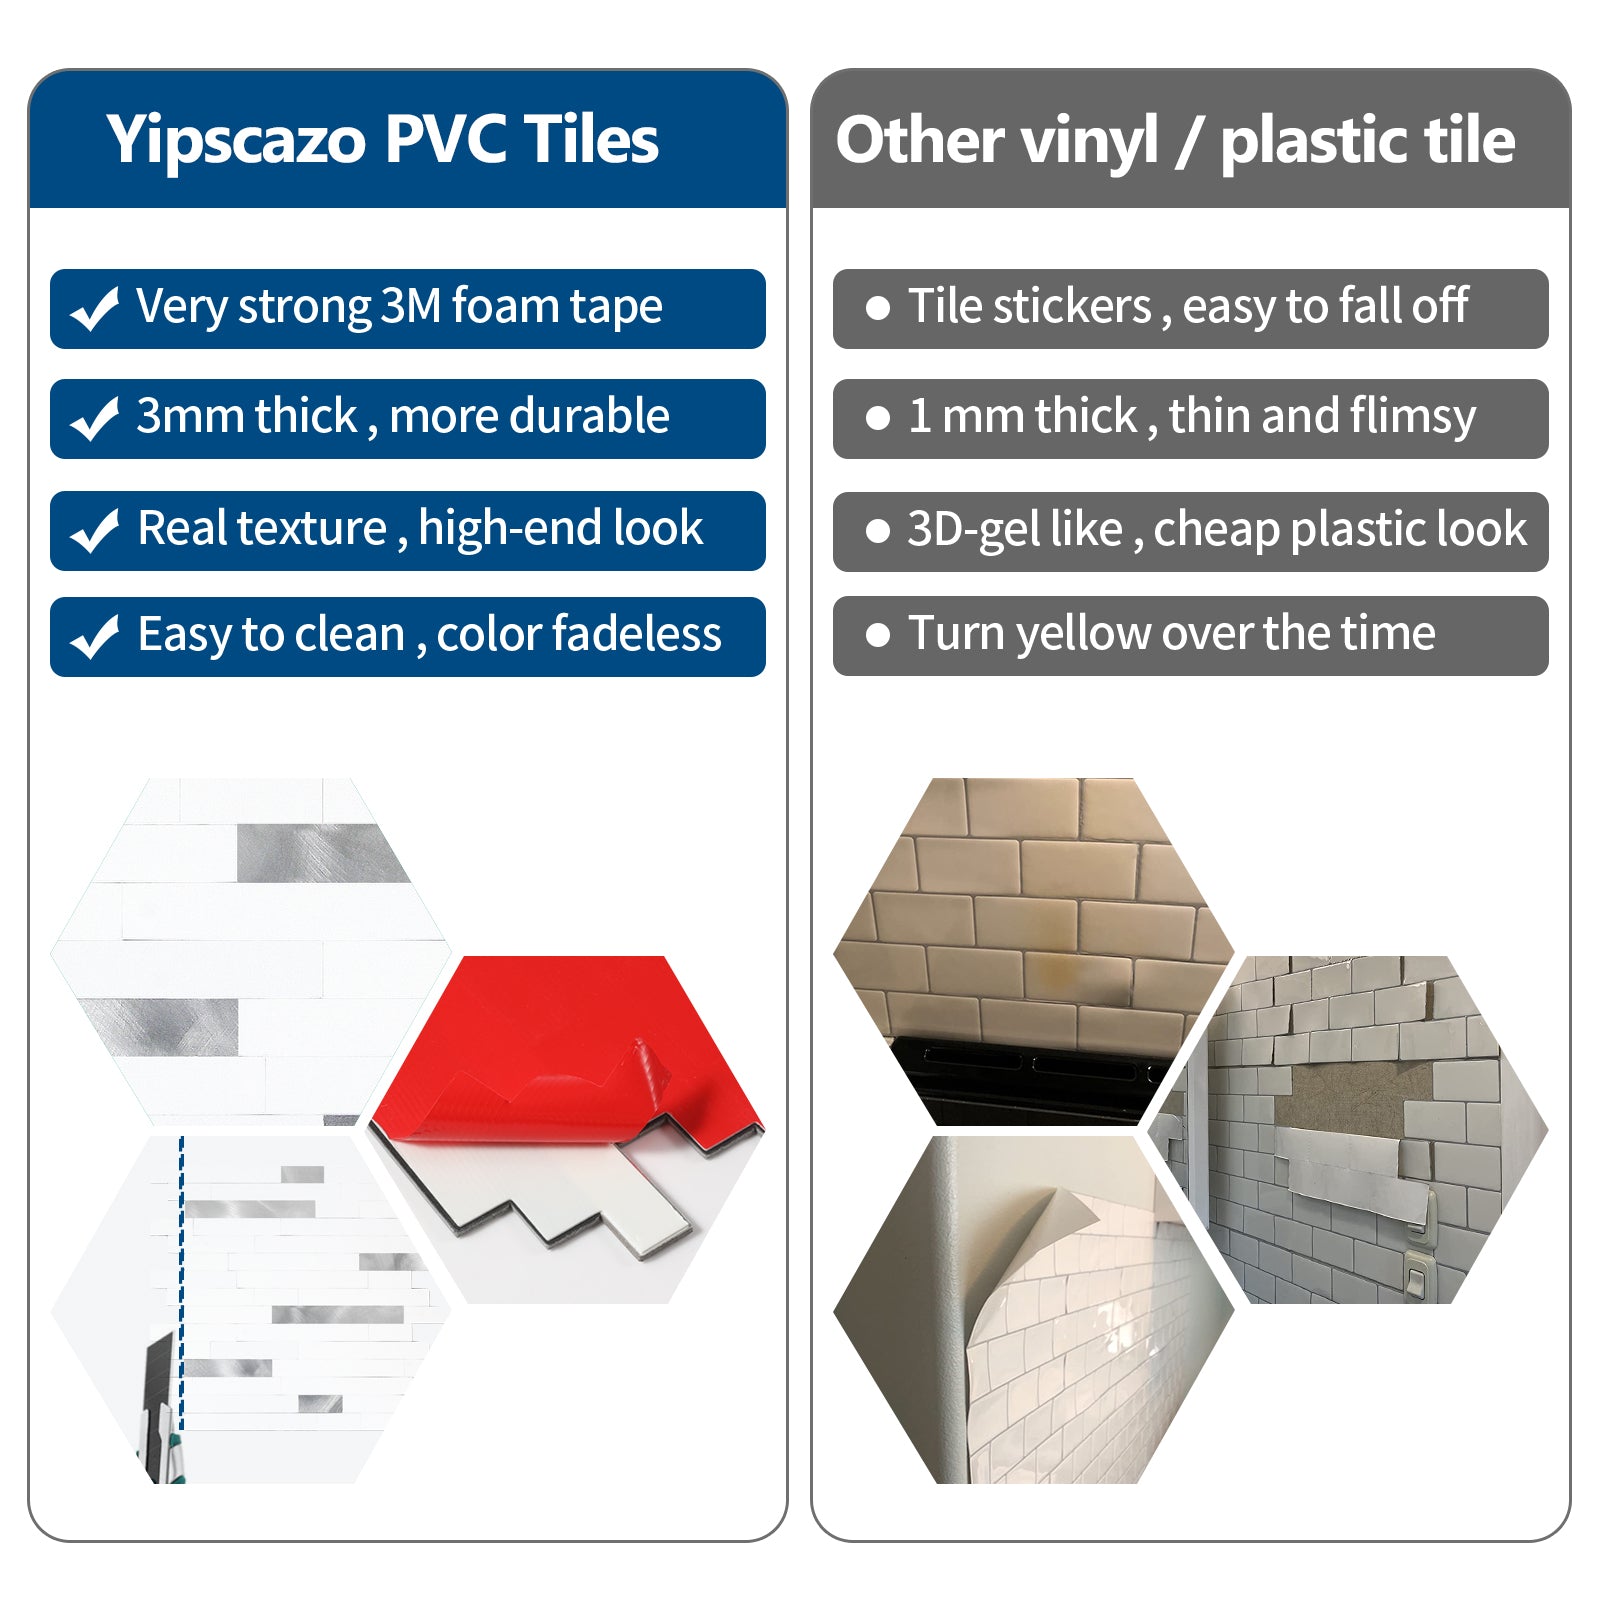 PVC tiles VS plastic tile